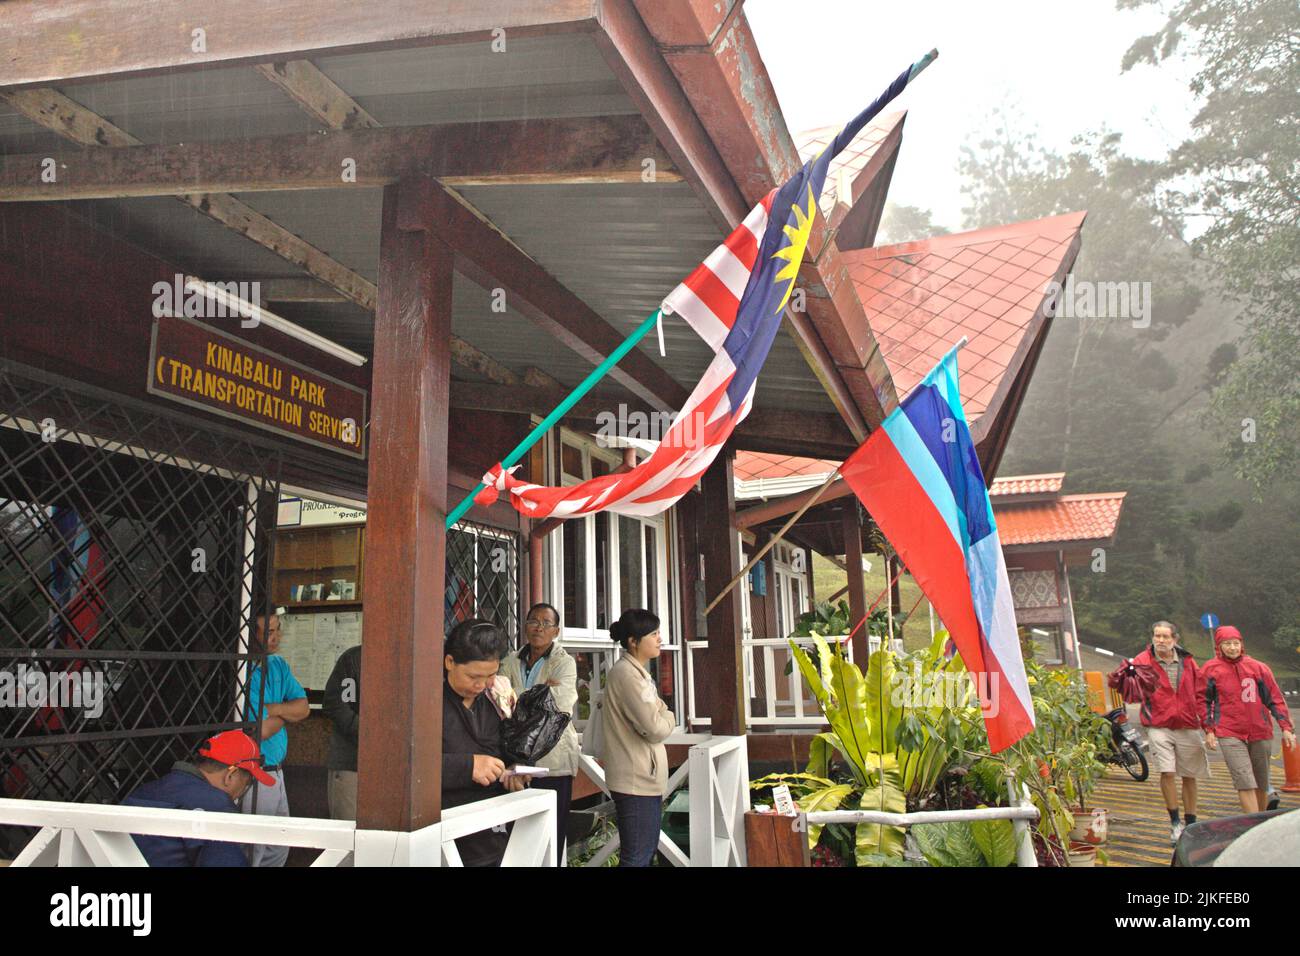 Visitors waiting at a transportation service station in Kinabalu Park, Ranau, Sabah, Malaysia. Stock Photo